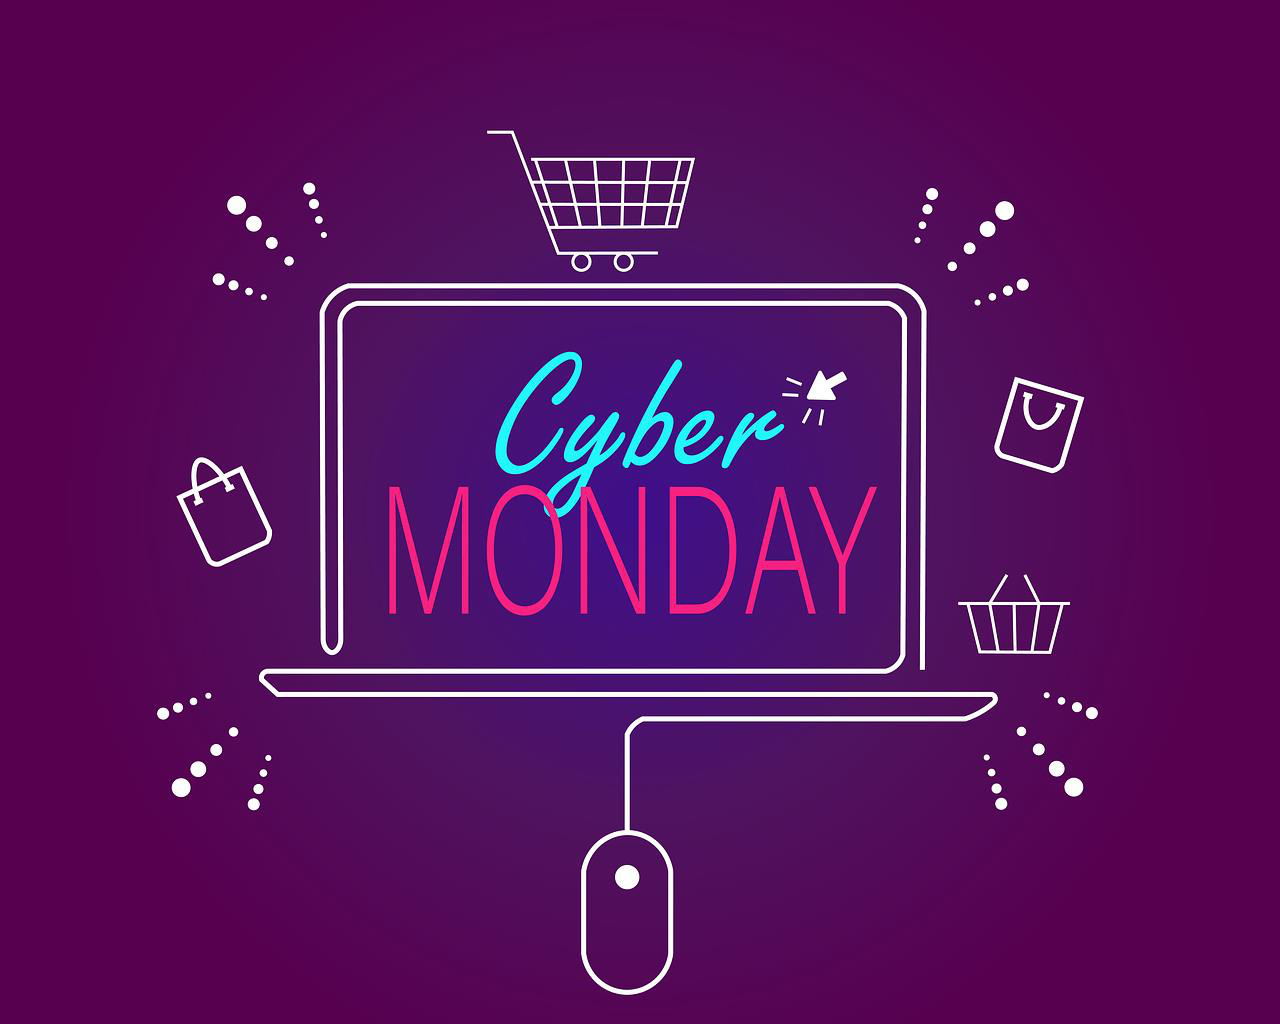 Cyber Monday là ngày gì mà dân tình ào ào rủ nhau đi mua sắm? - Ảnh 1.